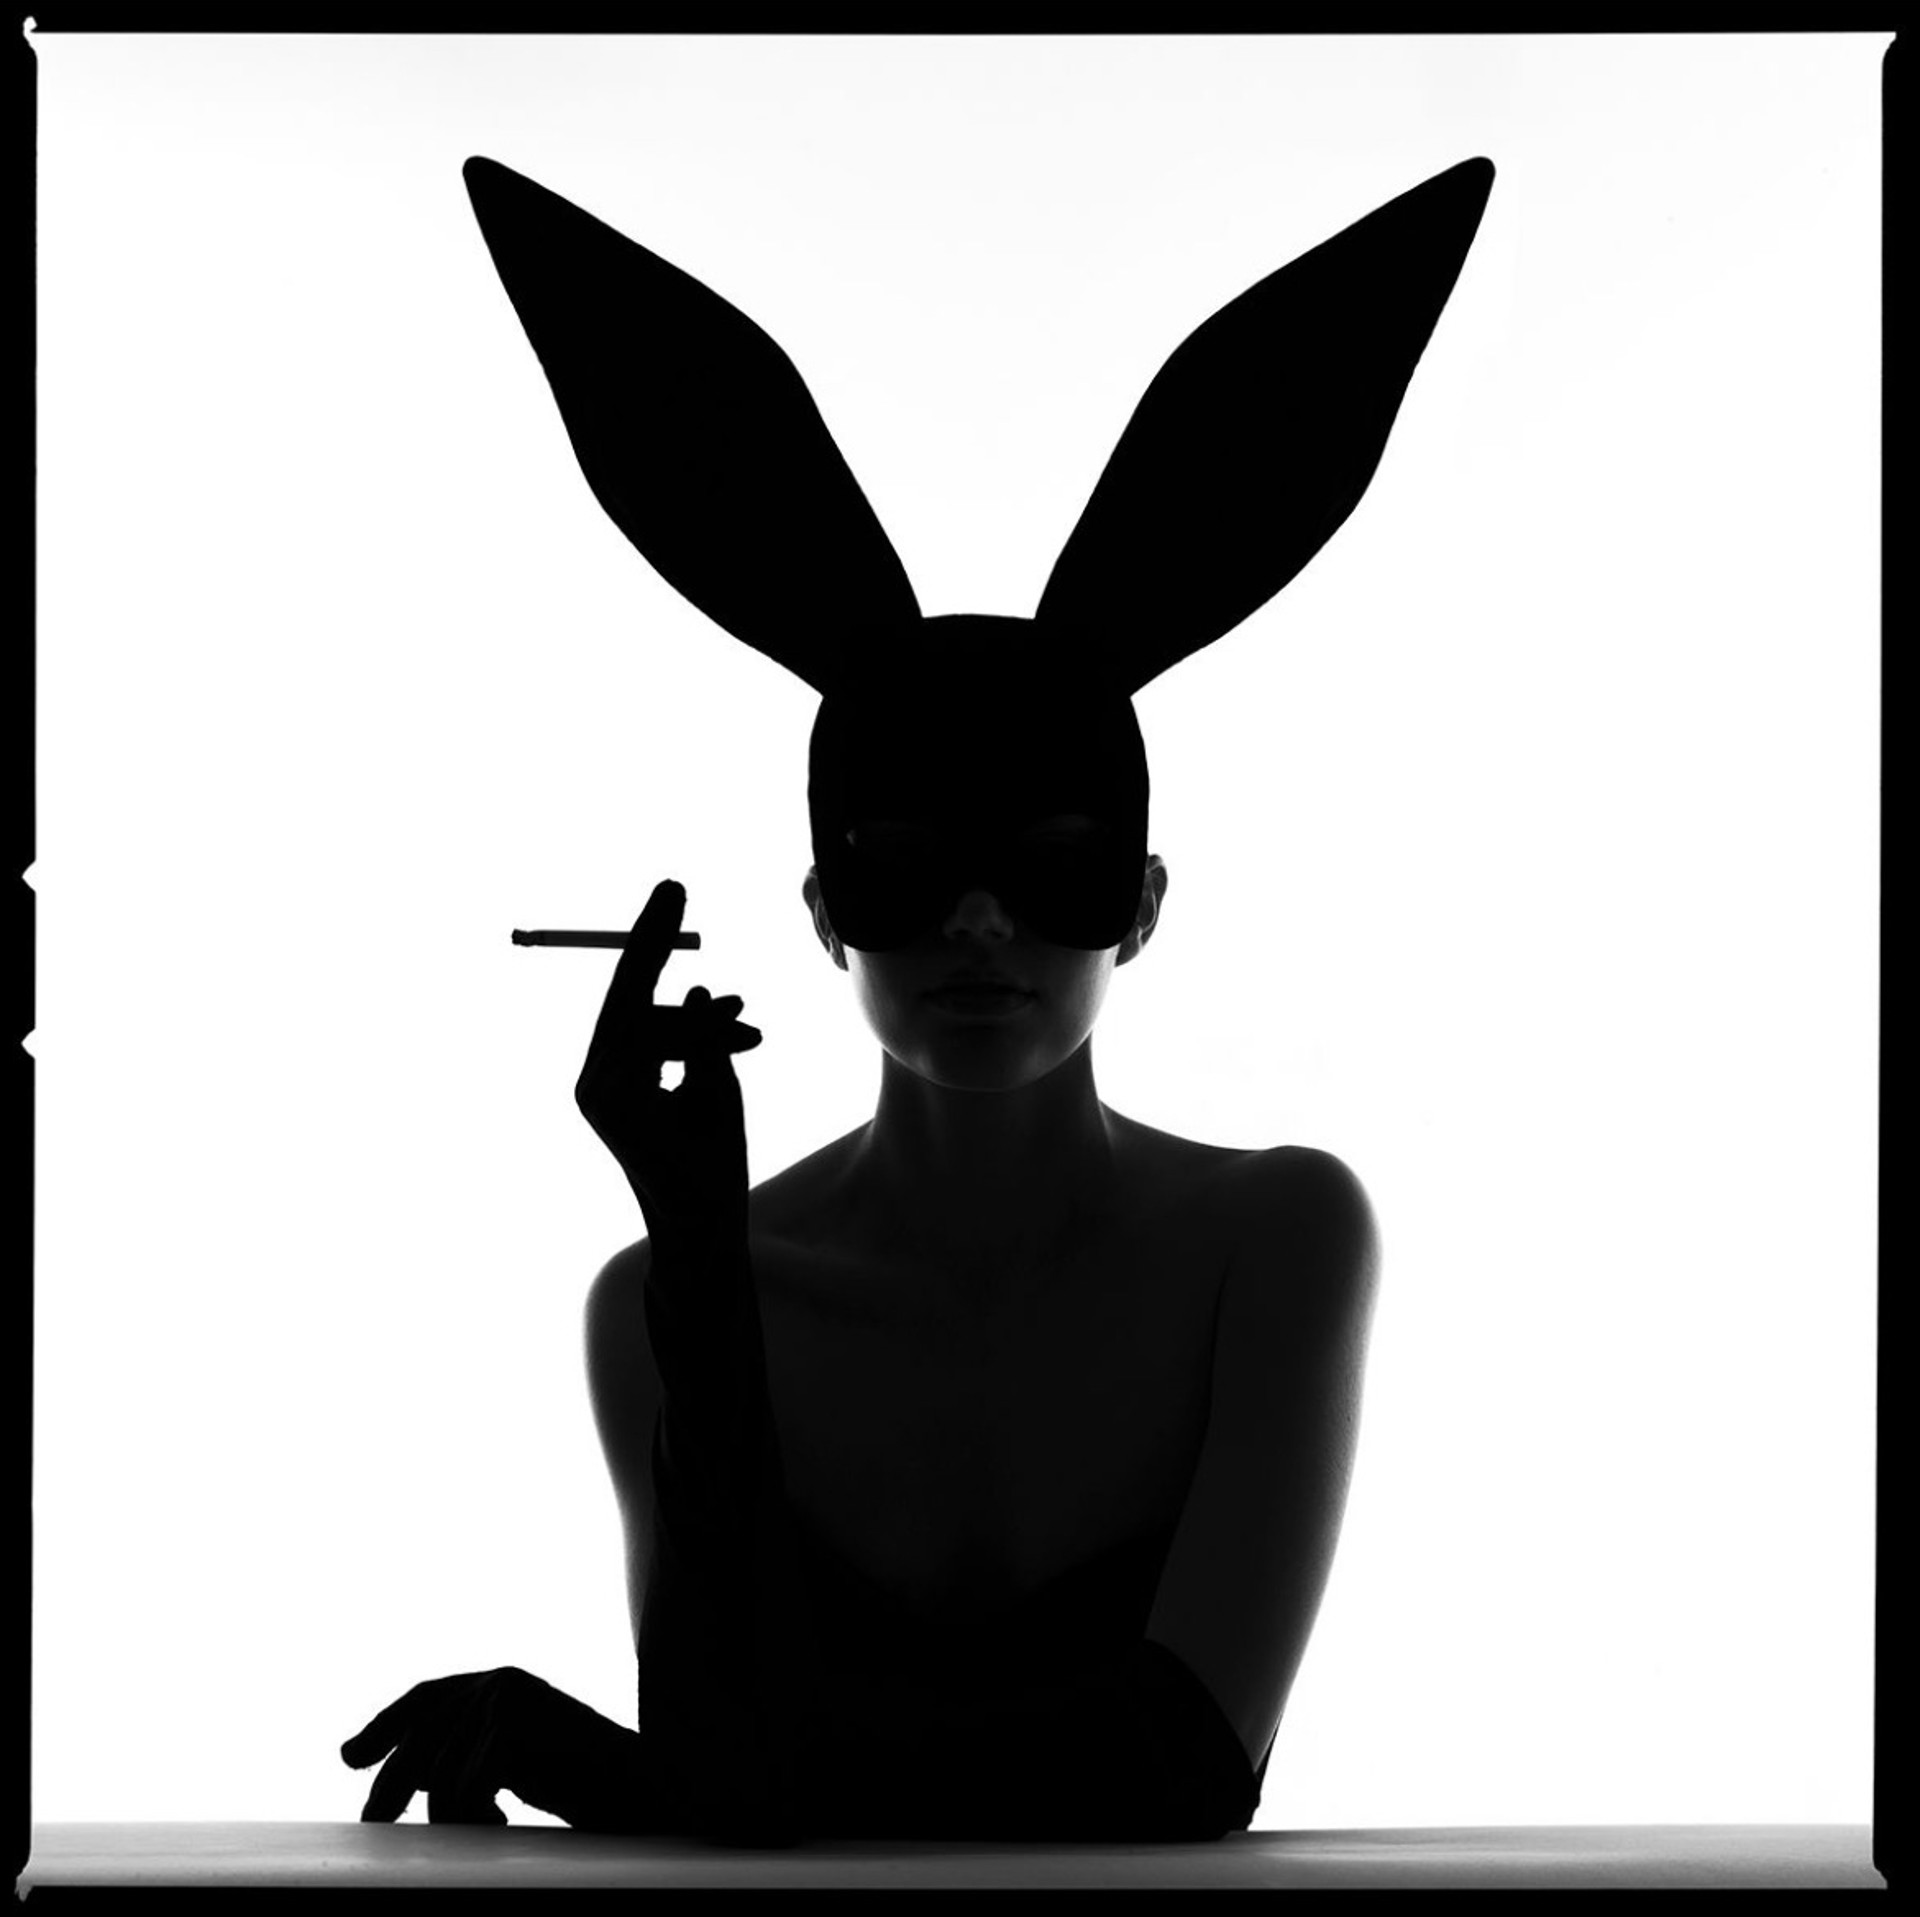 Bunny Silhouette III by Tyler Shields